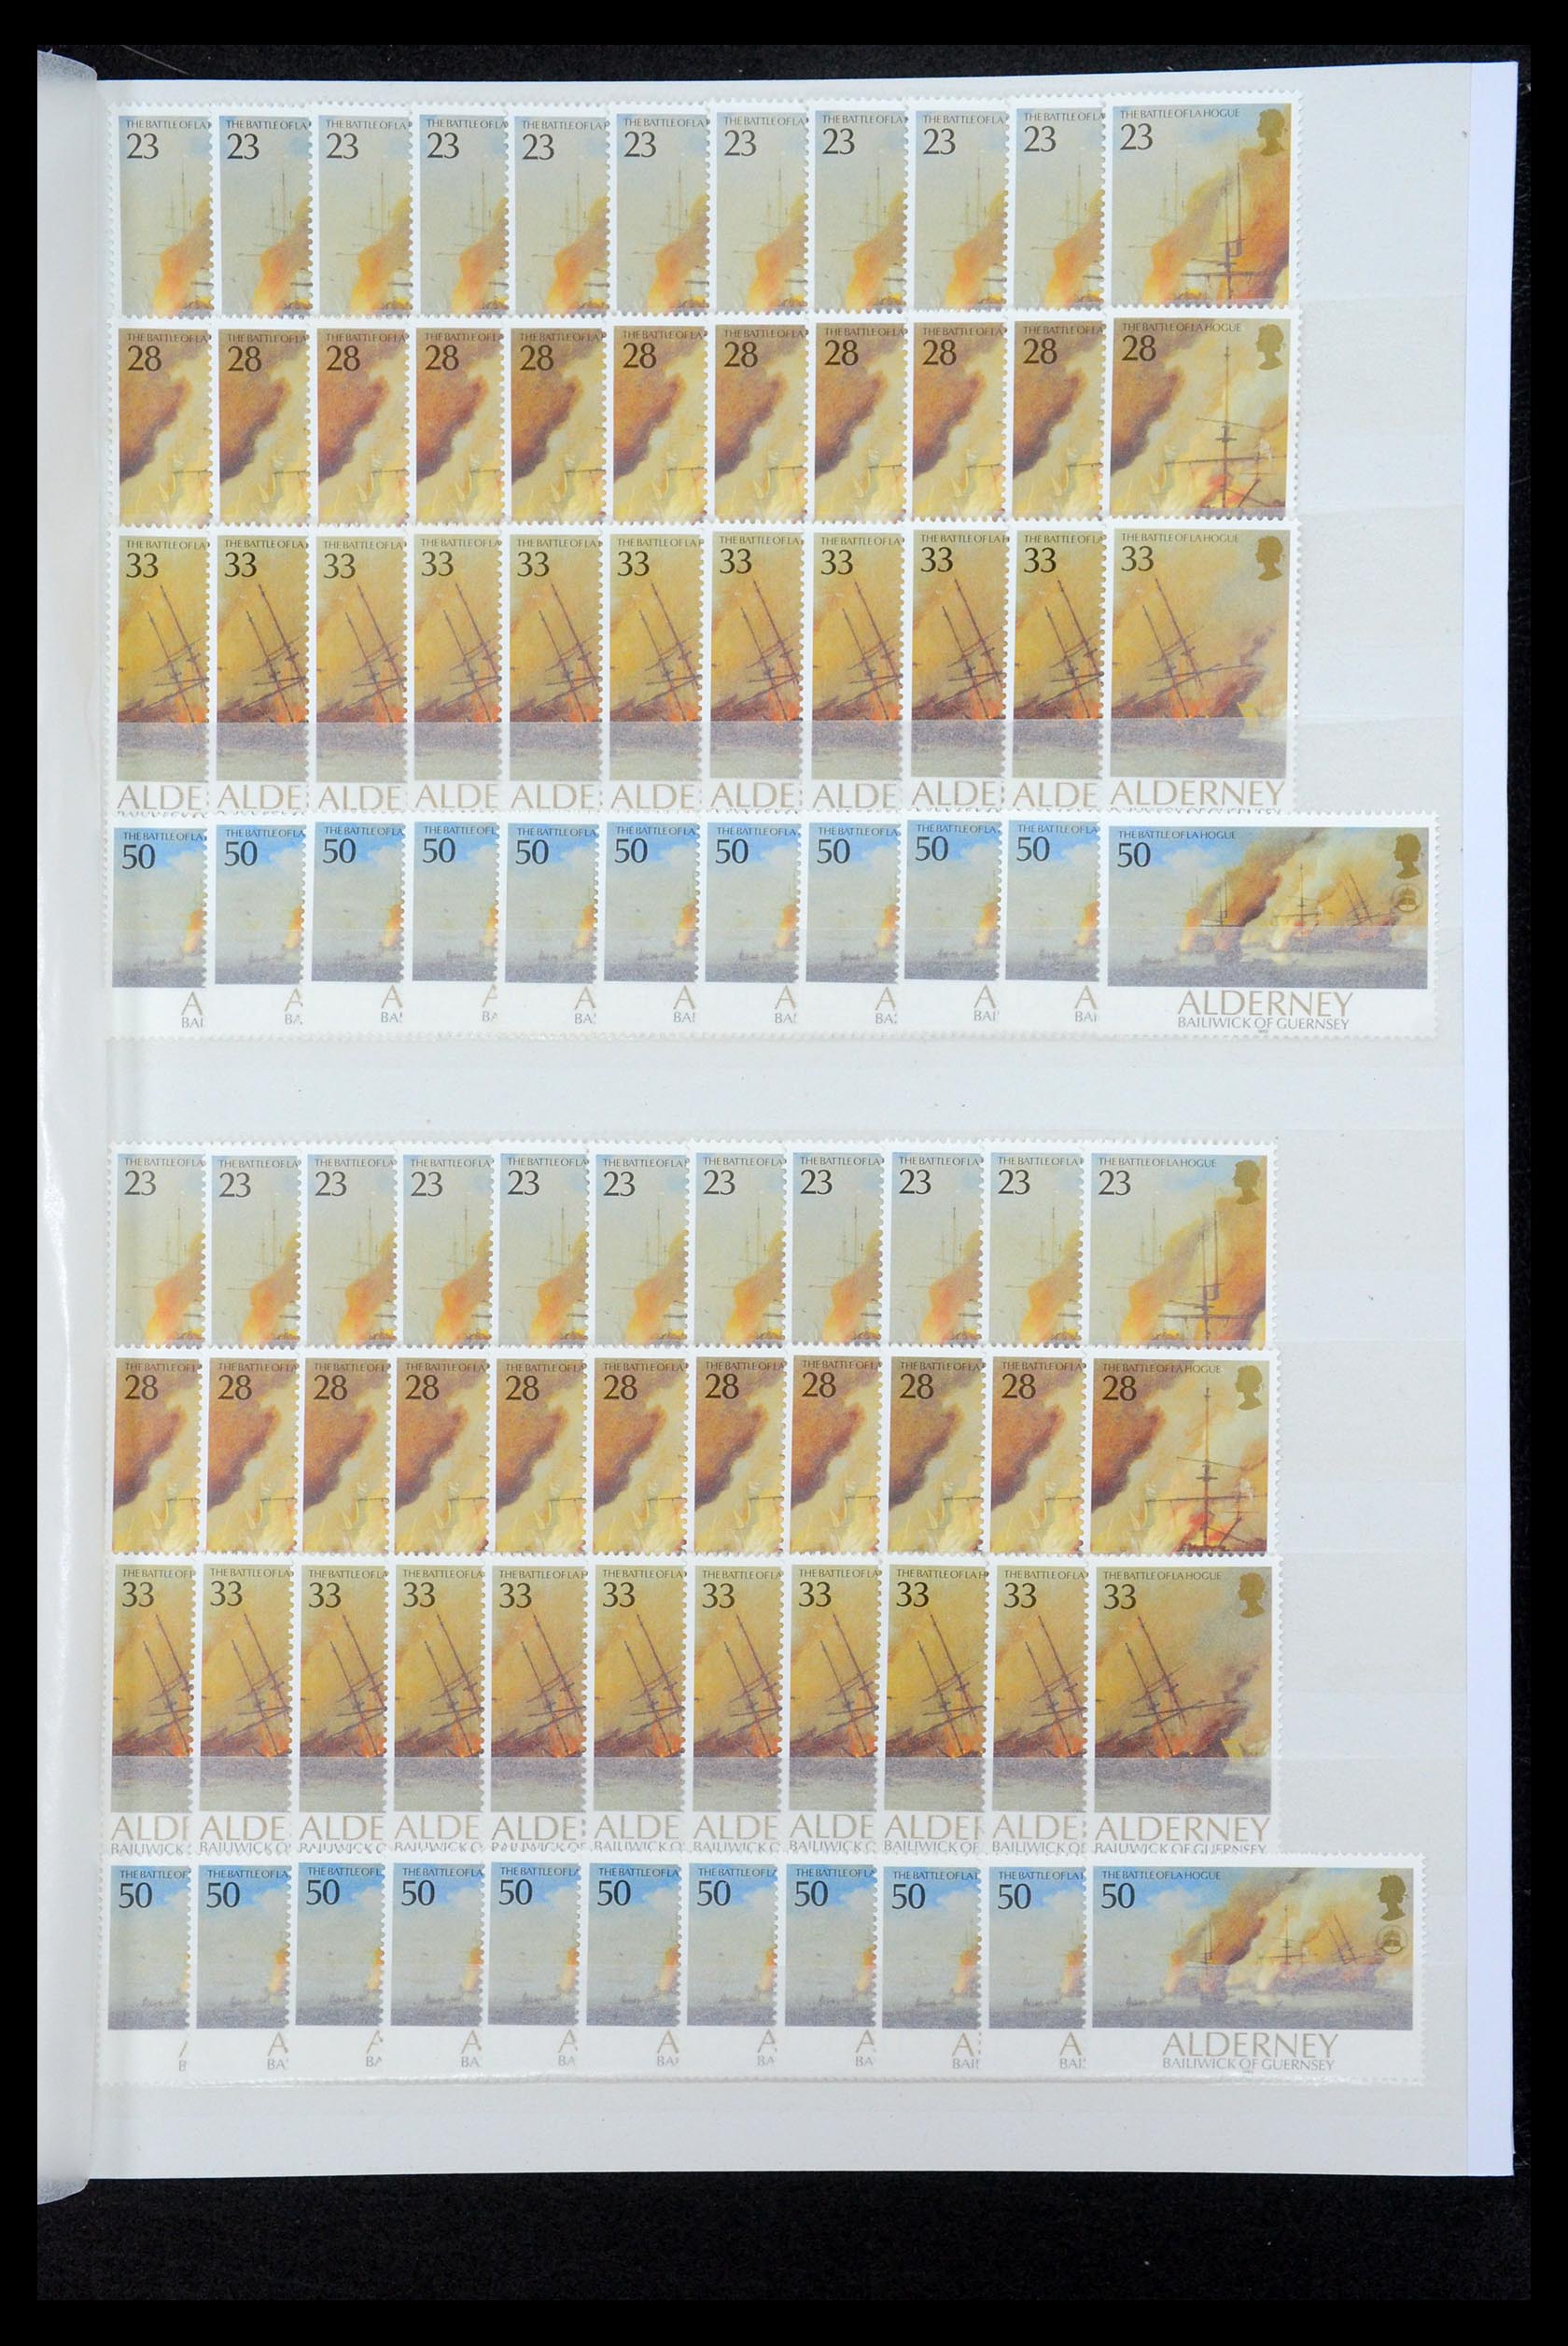 35529 039 - Stamp Collection 35529 Alderney1983-2014!